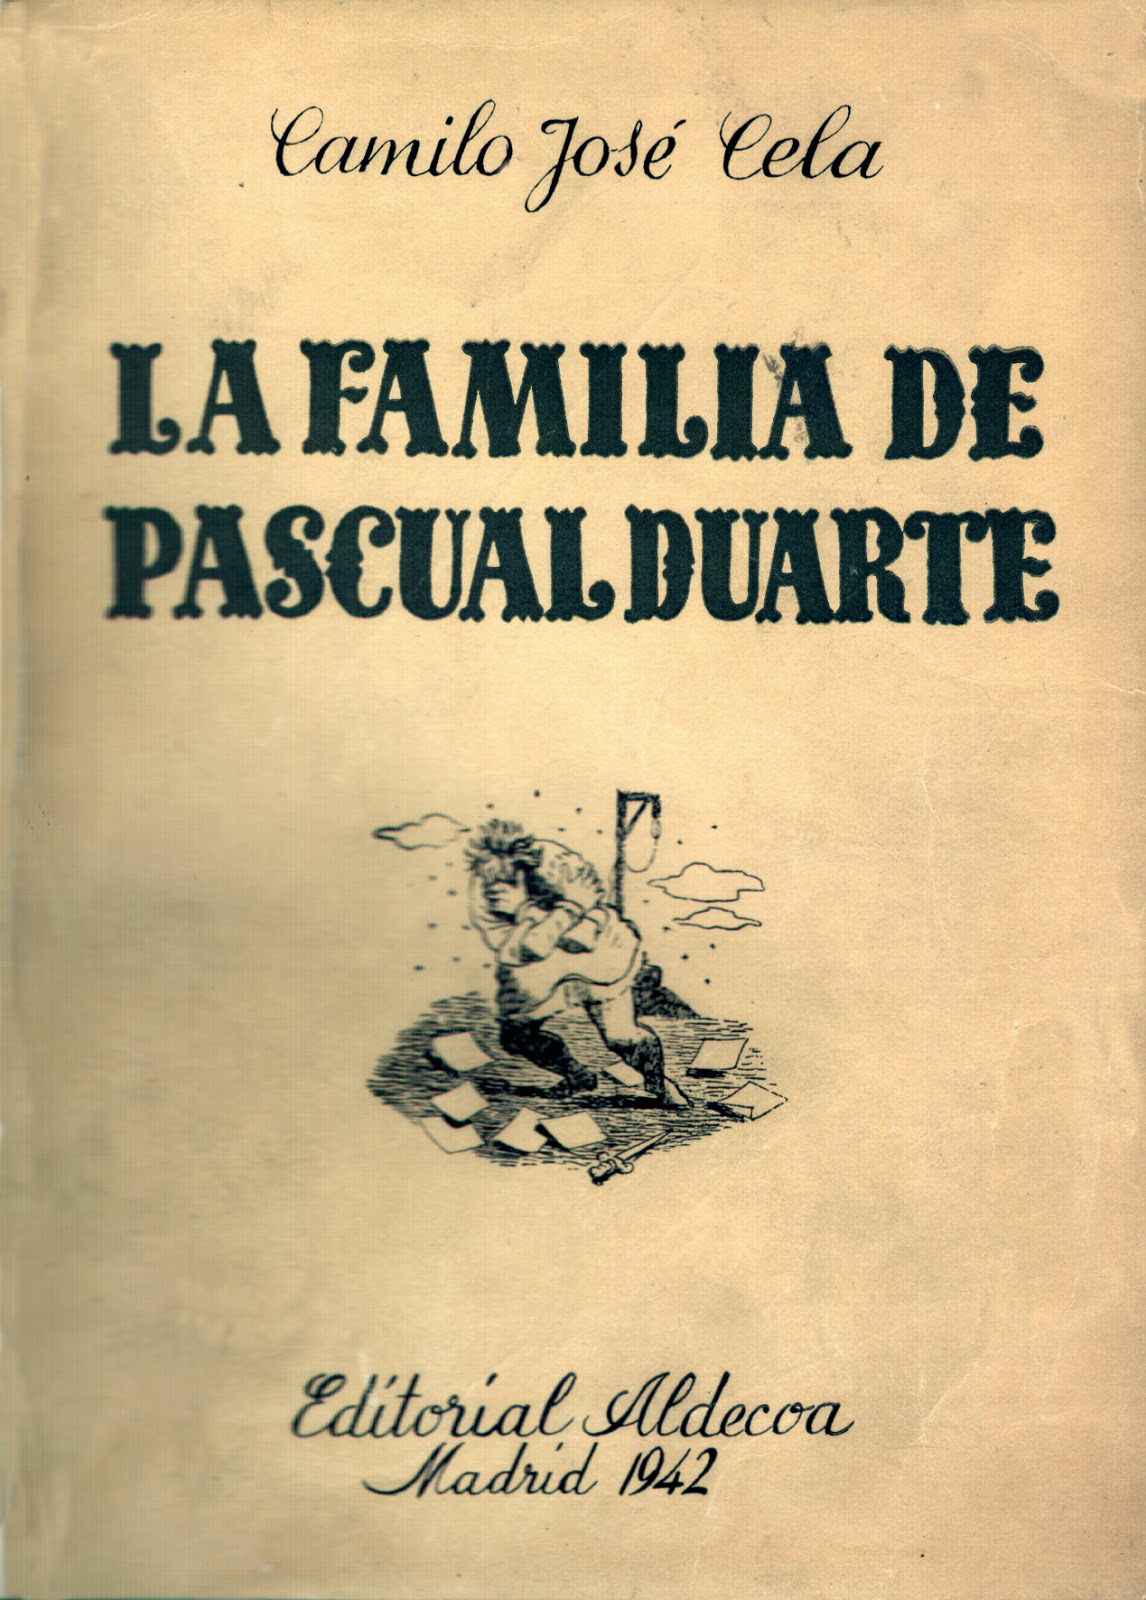 Significado y estructura de La Familia de Pascual Duarte Libros y peliculas